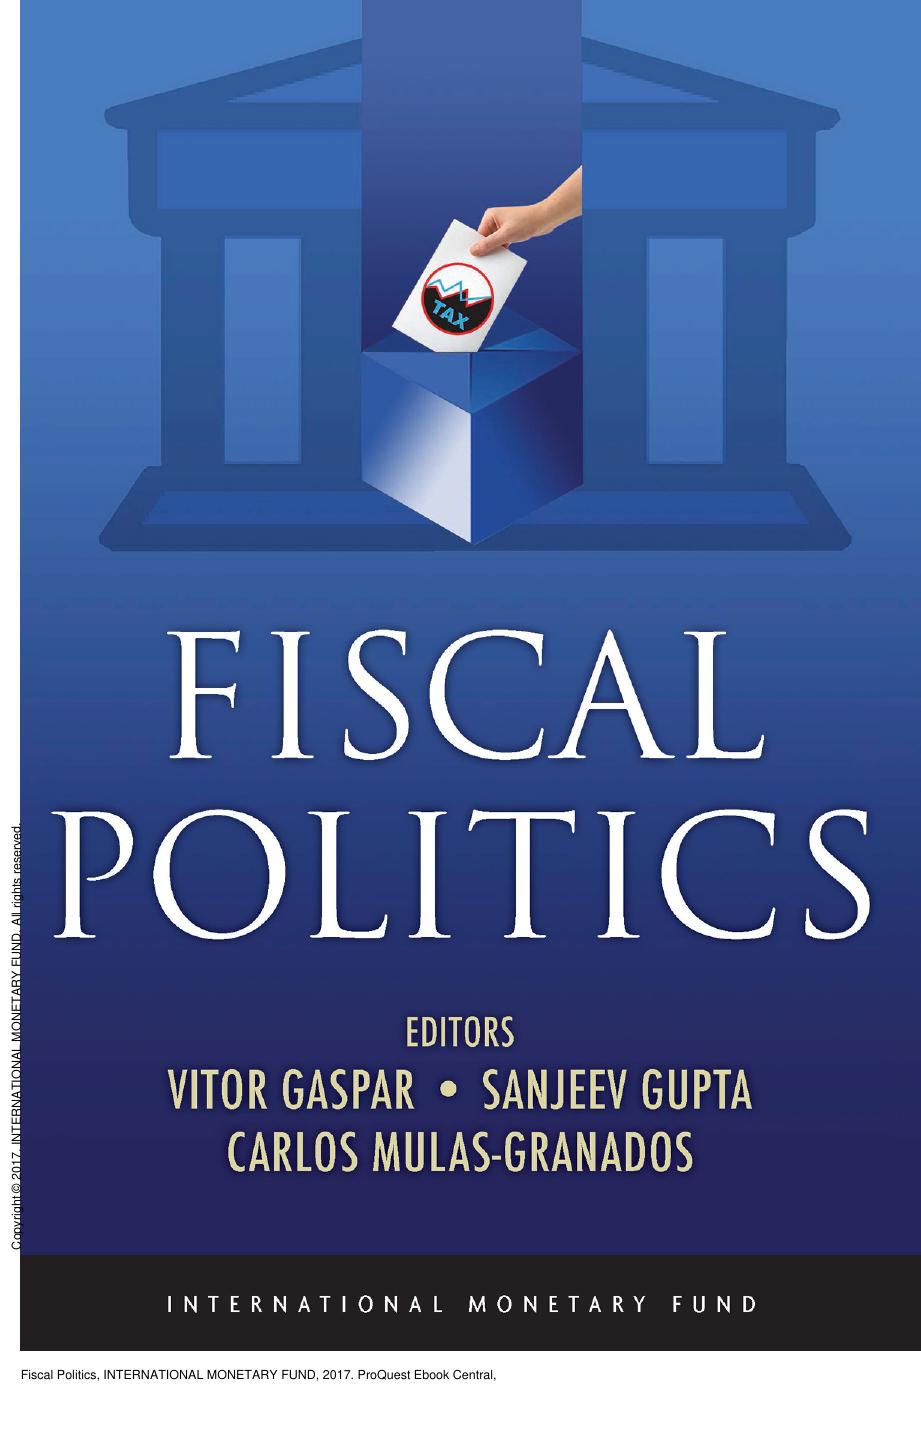 Fiscal Politics by Vitor Gaspar; Sanjeev Gupta; Carlos Mulas-Granados